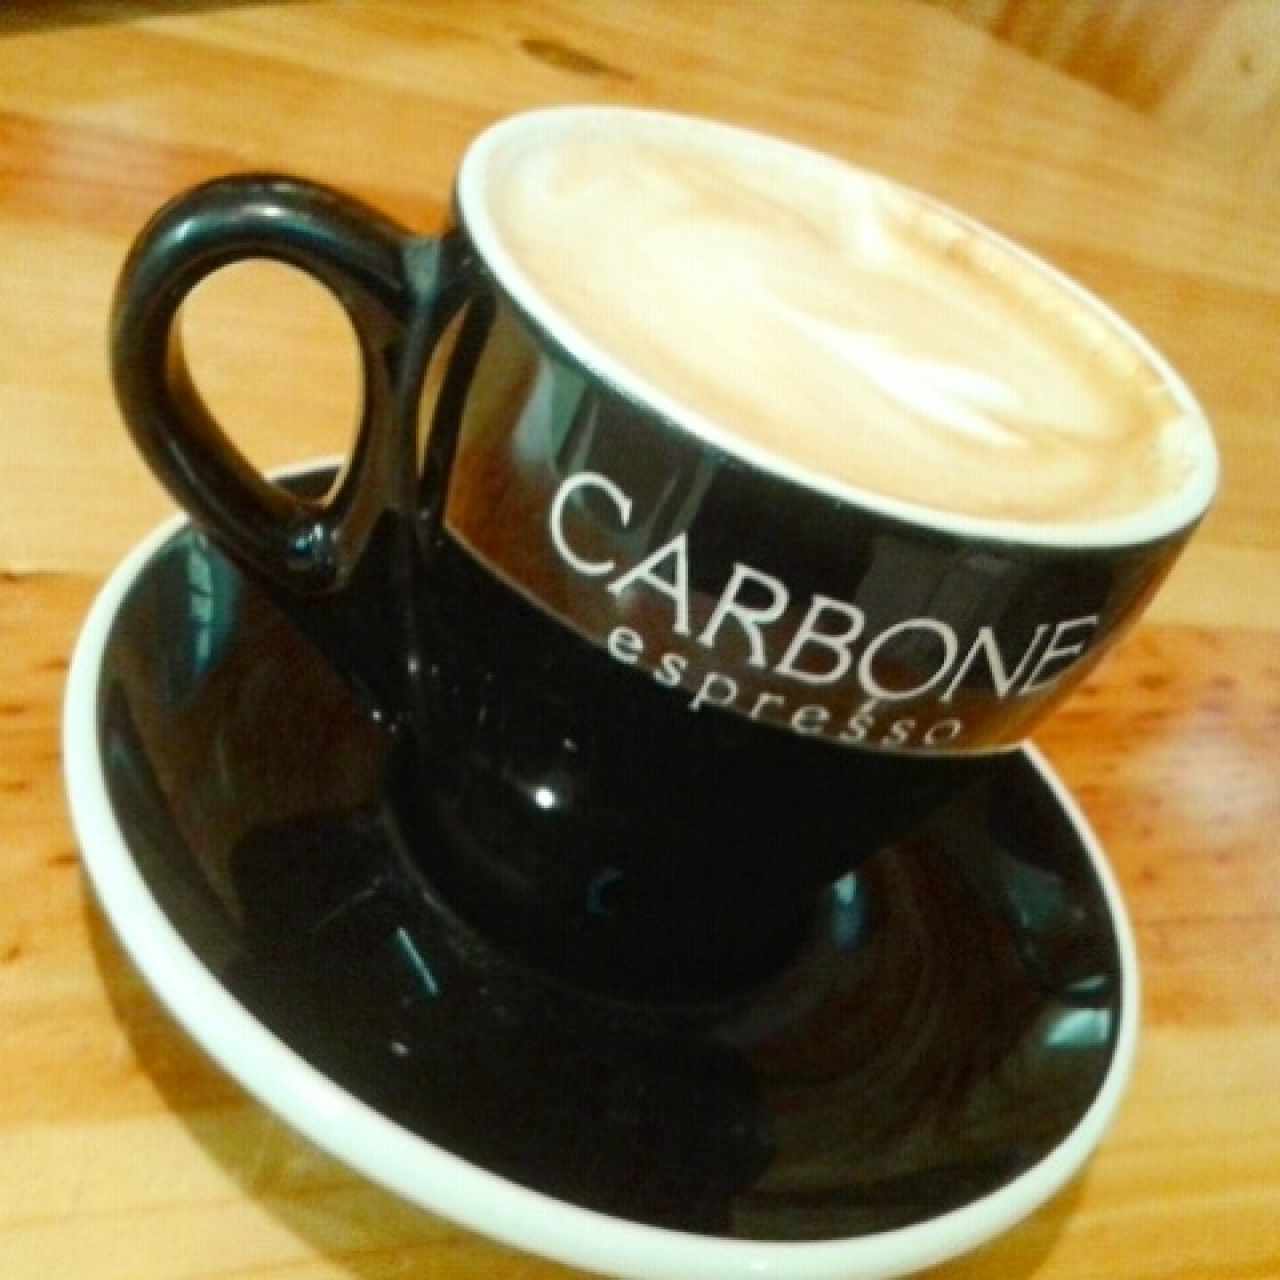 Marrón grande, Carbone Espresso inside!